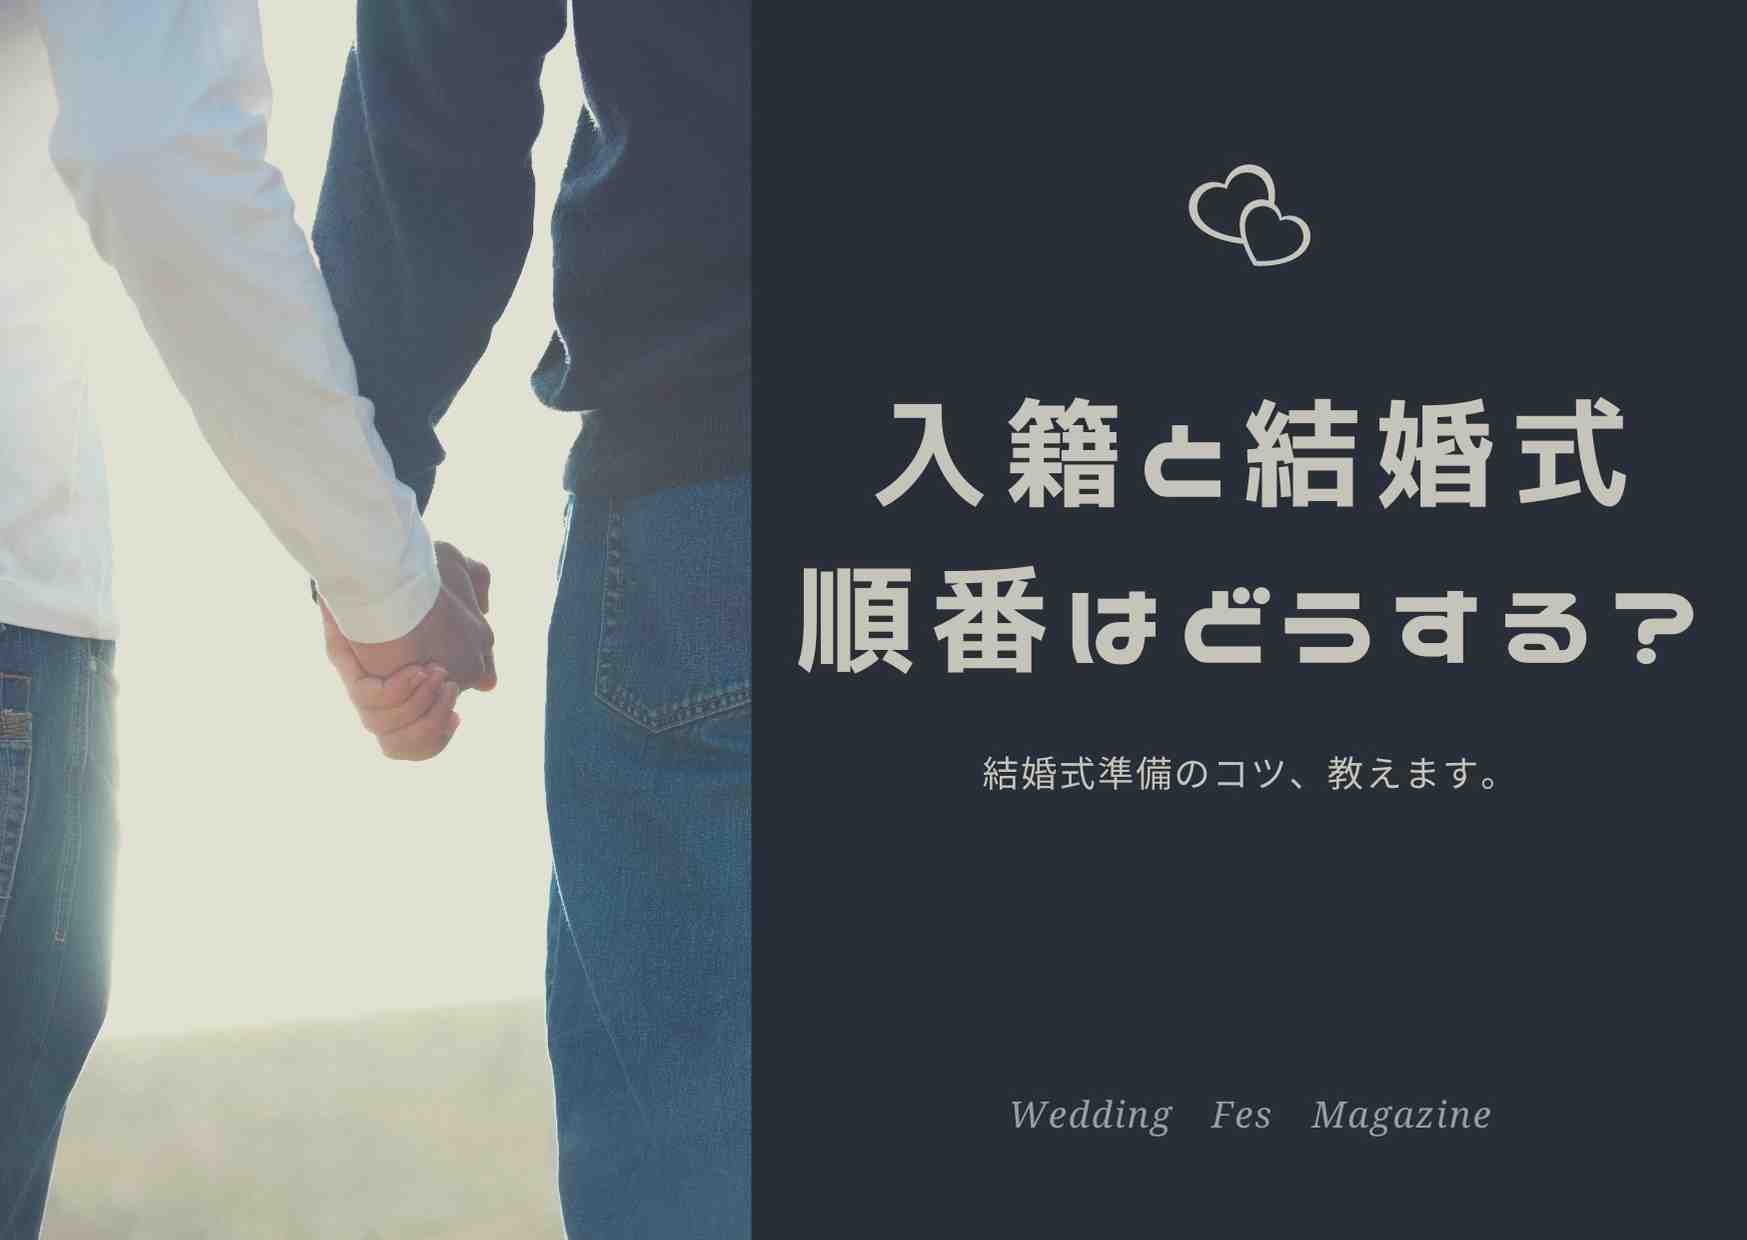 21年版 入籍はいつ おすすめの入籍日 縁起の良い日まとめ Wedding Fes Magagine Value Management Inc